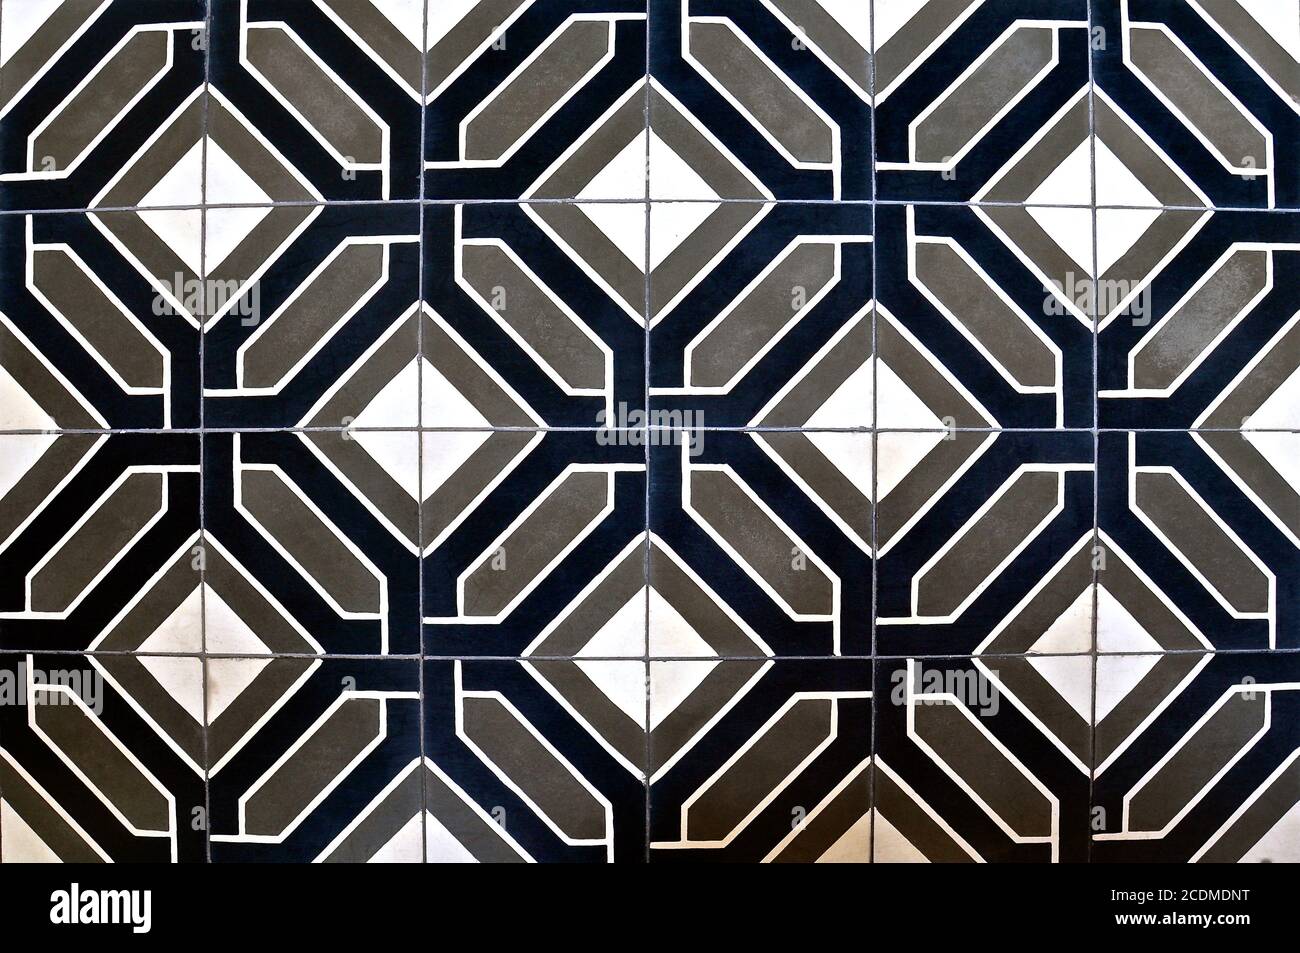 Mosaico di piastrelle Peranakan come si trova tipicamente nelle tradizionali botteghe cinesi, con un motivo geometrico e simmetrico ripetuto di grigio, bianco e blu marino Foto Stock